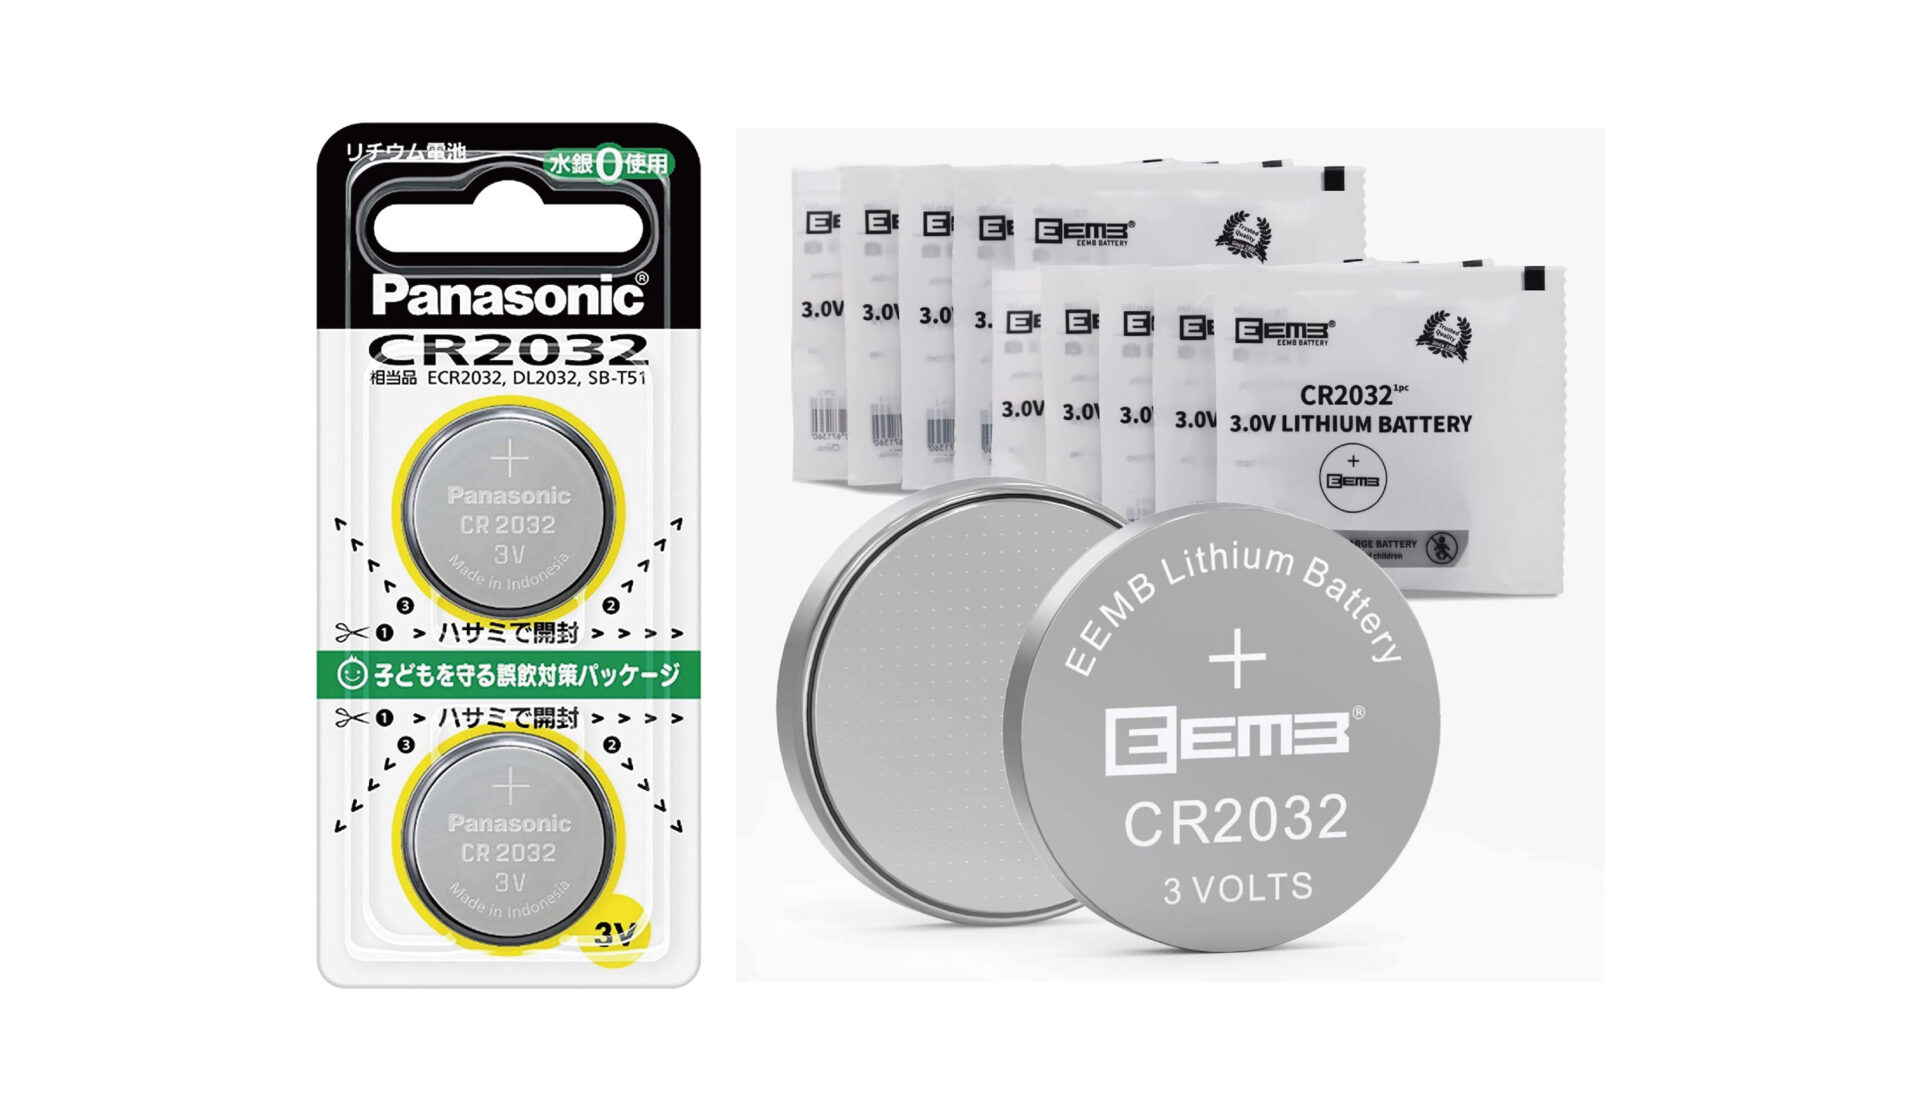 Panasonic CR2032 CR-2032 2P パナソニック CR20322P リチウム電池 コイン型 3V 2個入  純正品 ボタン電池 送料無料 